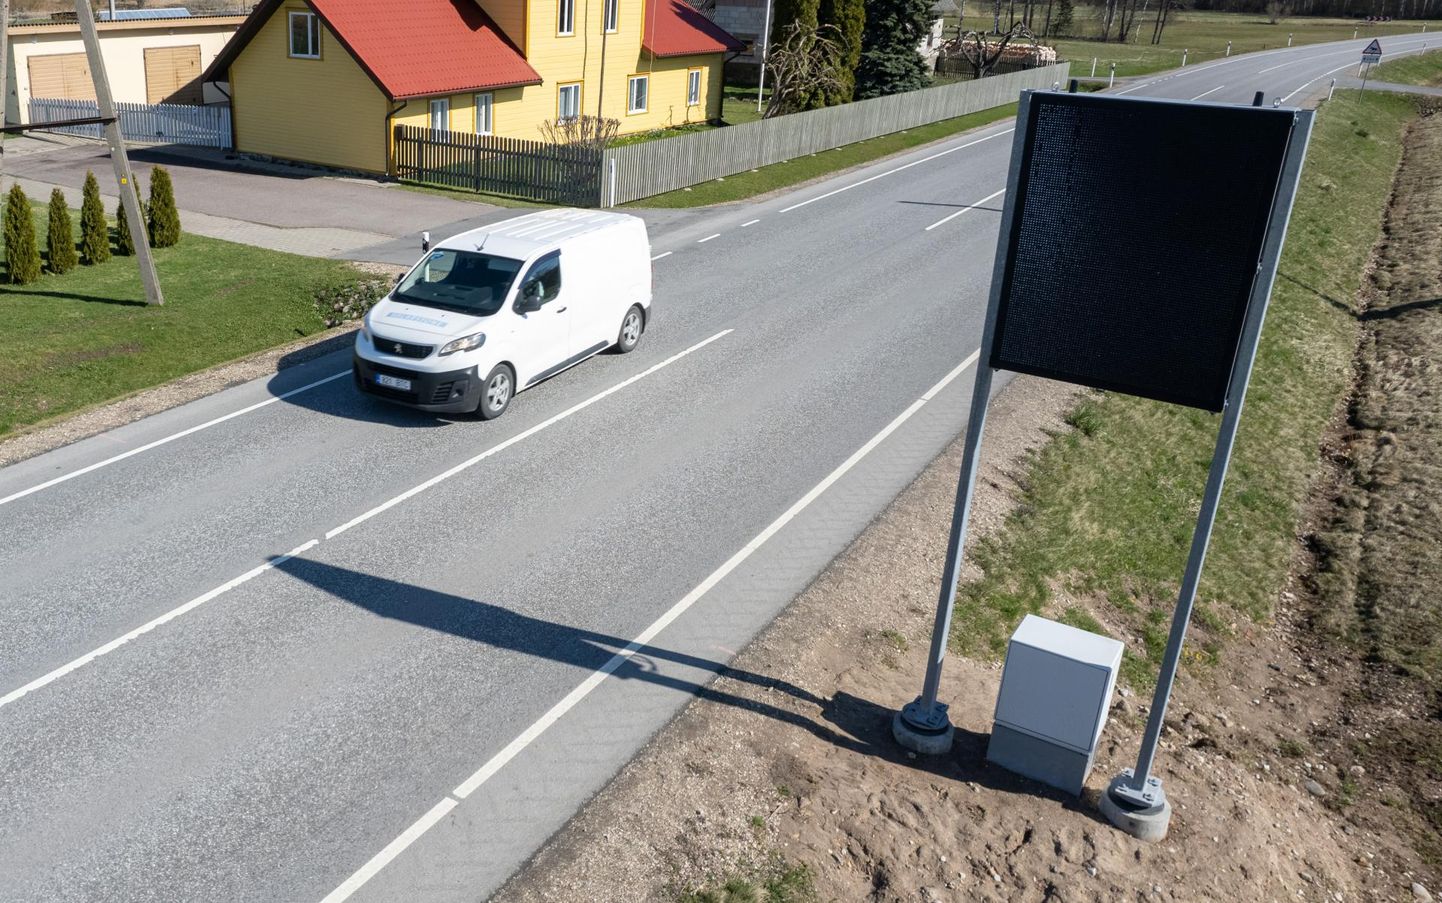 Tänassilma külas Tartu–Viljandi maantee ääres annab liiklejaile infot muutuva teabega märk, aga kui midagi vajalikku teatada pole, on ekraan välja lülitatud.